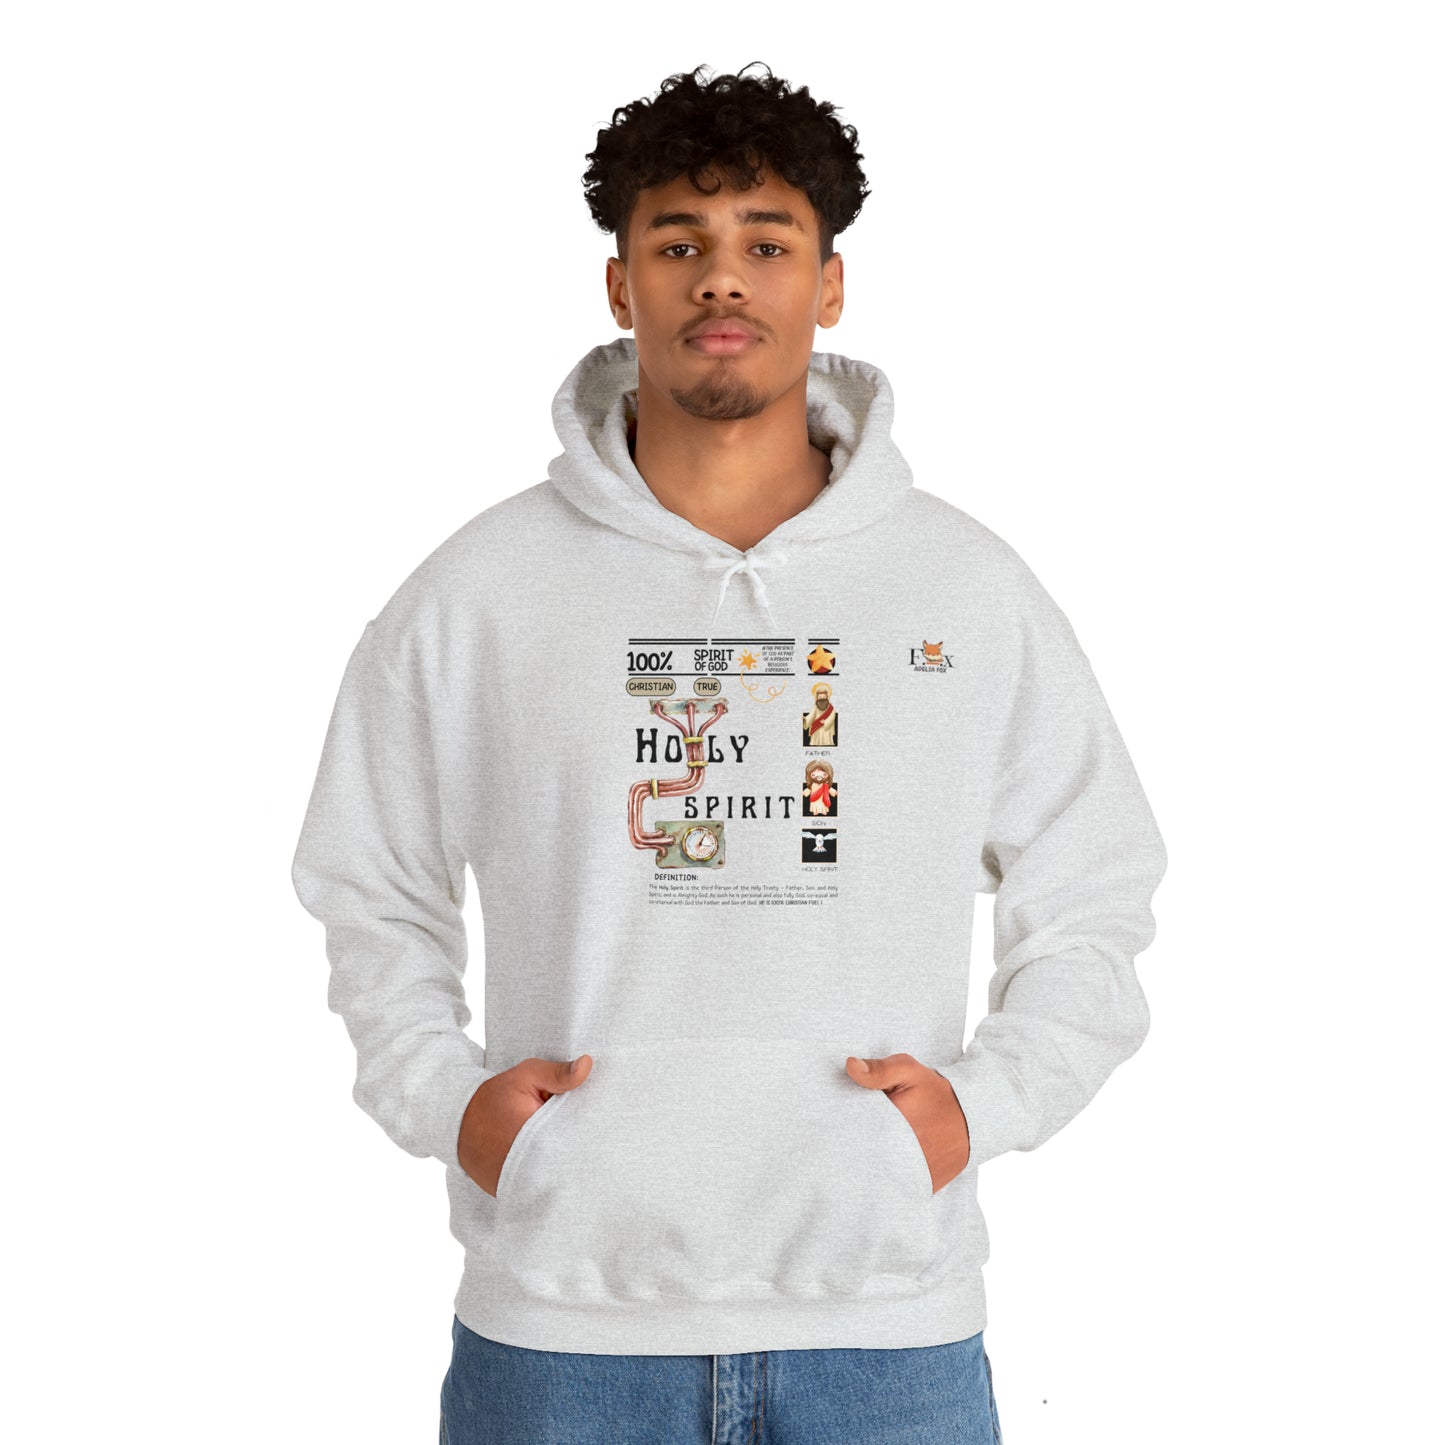 100% Holy Spirit- Unisex Hooded Sweatshirt